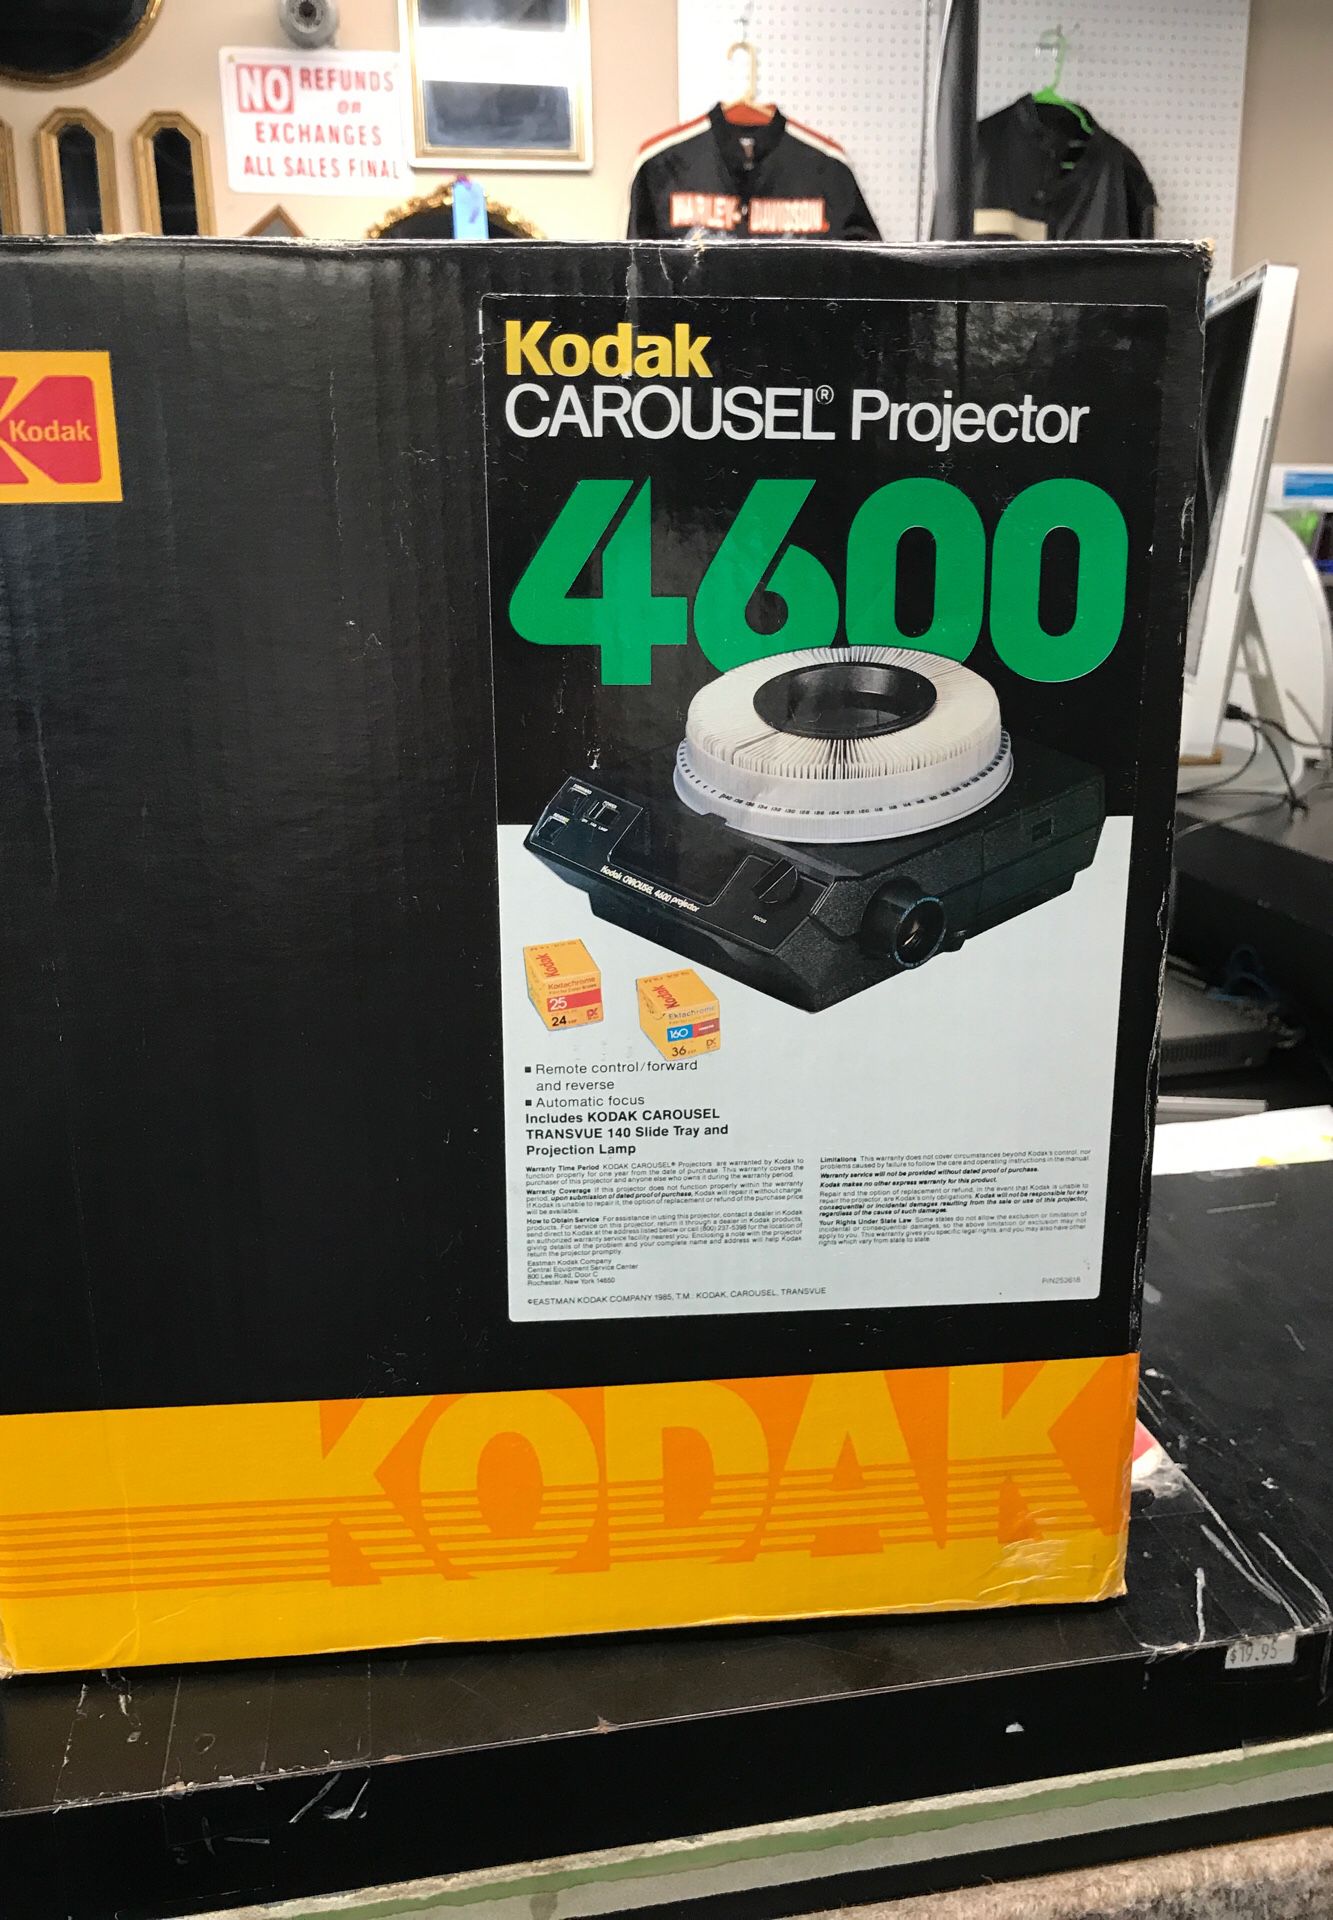 Kodak CAROUSEL Projector